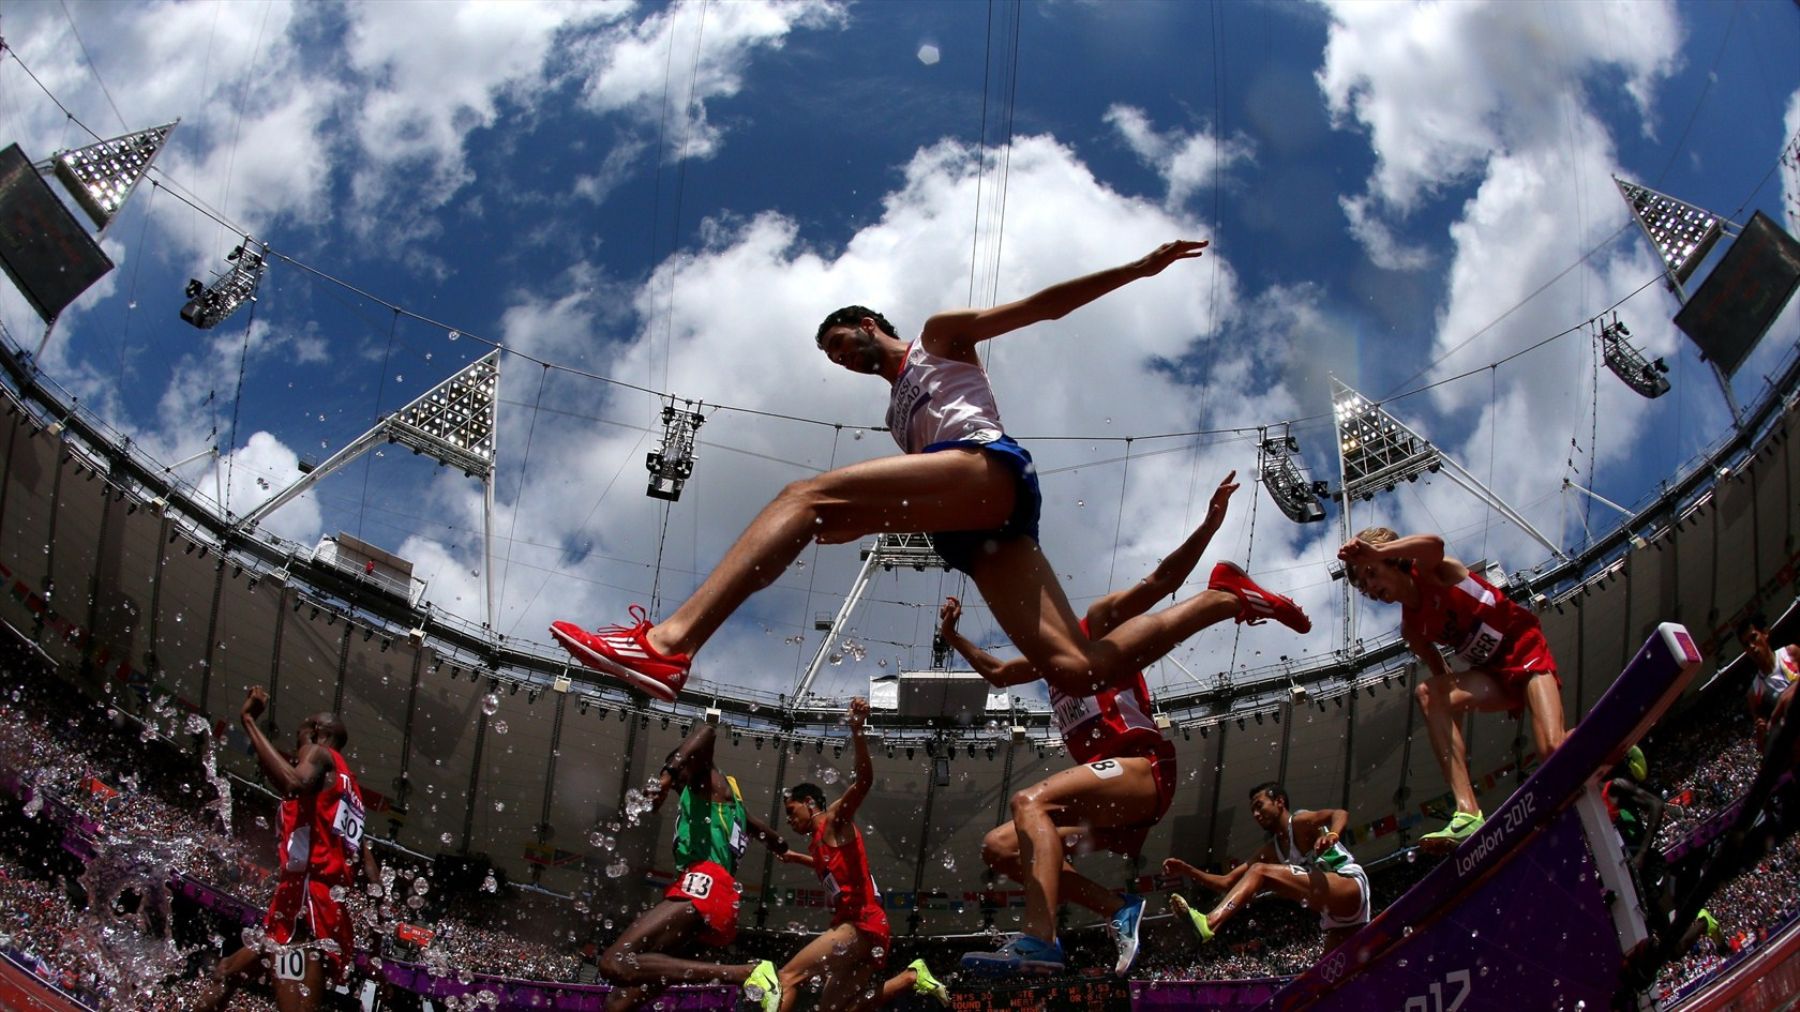 Prueba de 3,000 metros con obstáculos en los Juegos Olímpicos de Londres 2012. Foto: London2012.com